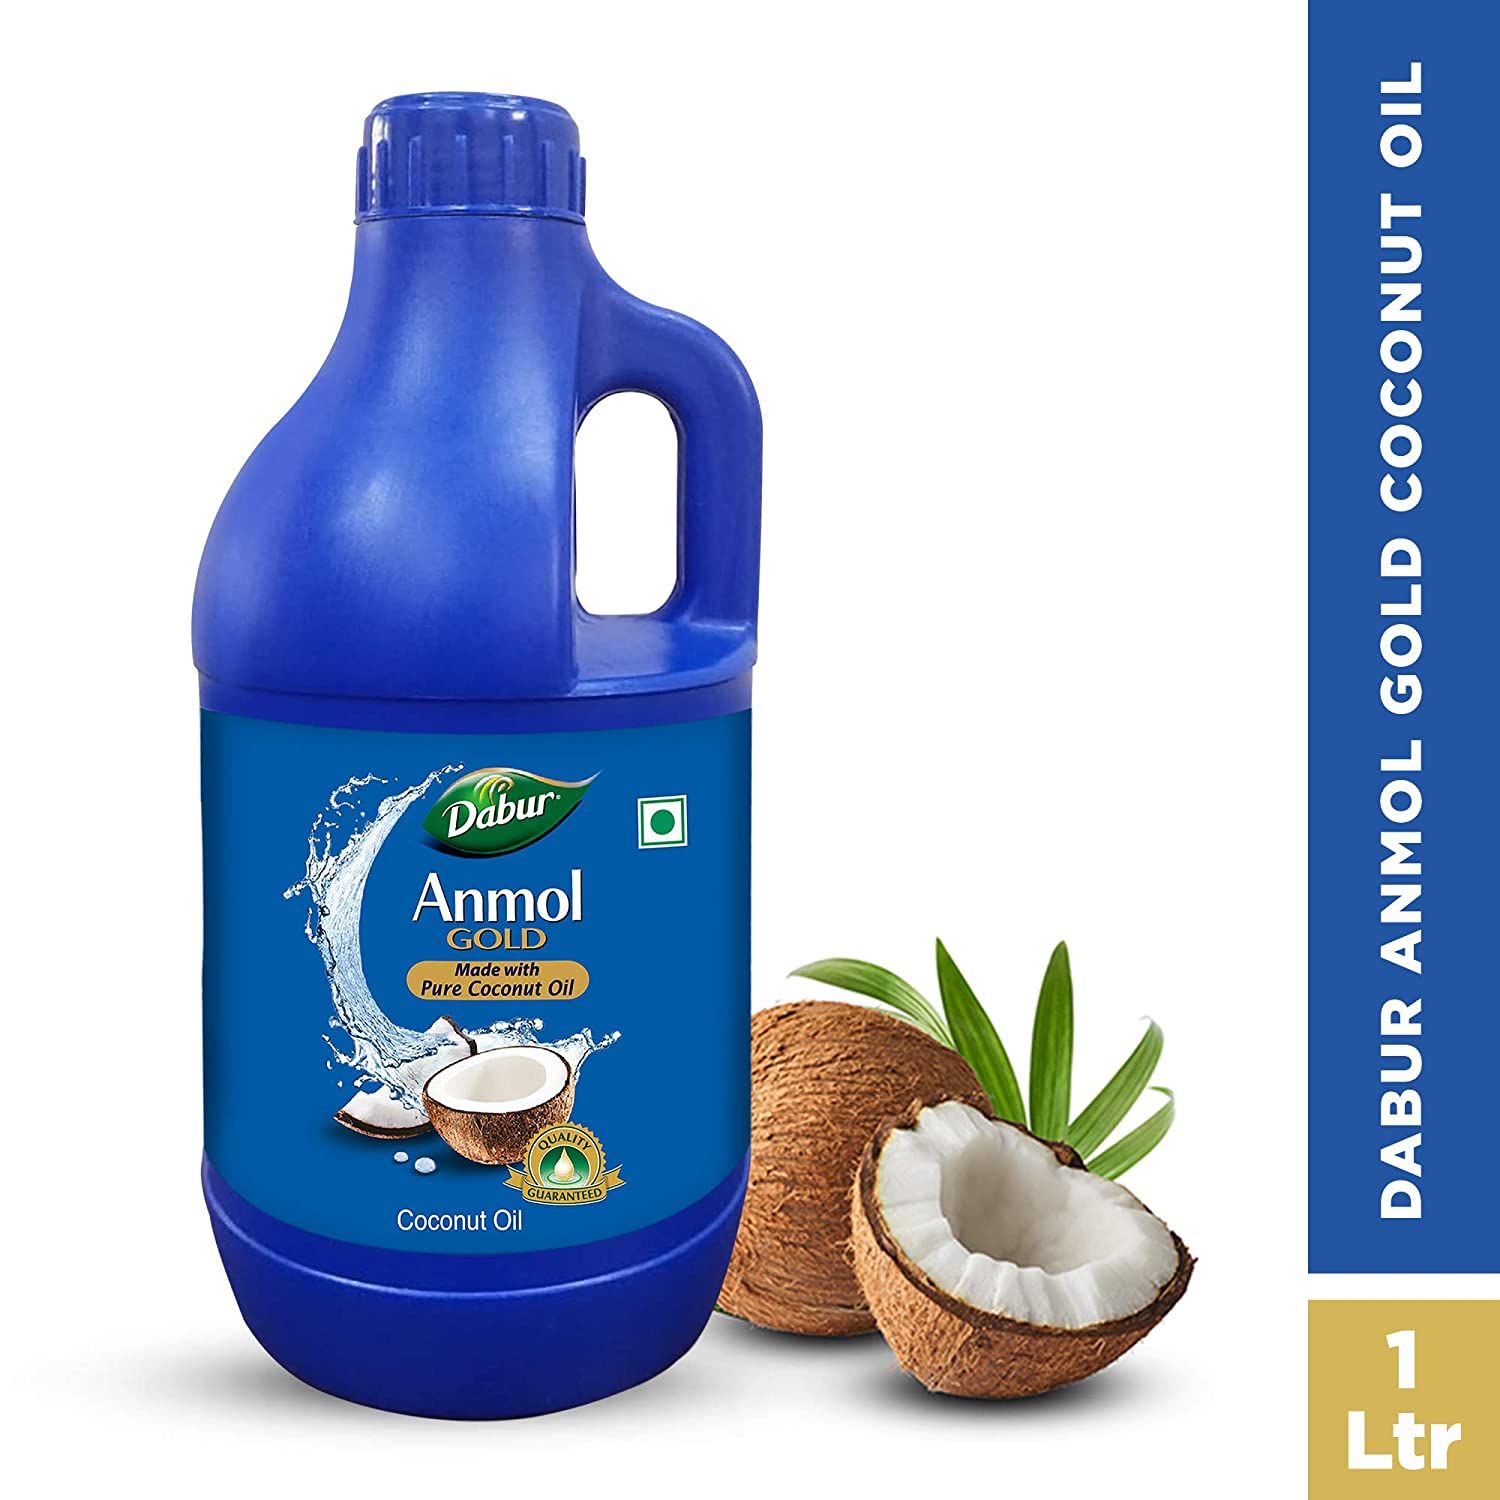 Dabur Anmol Gold 100% Pure Coconut Oil Image